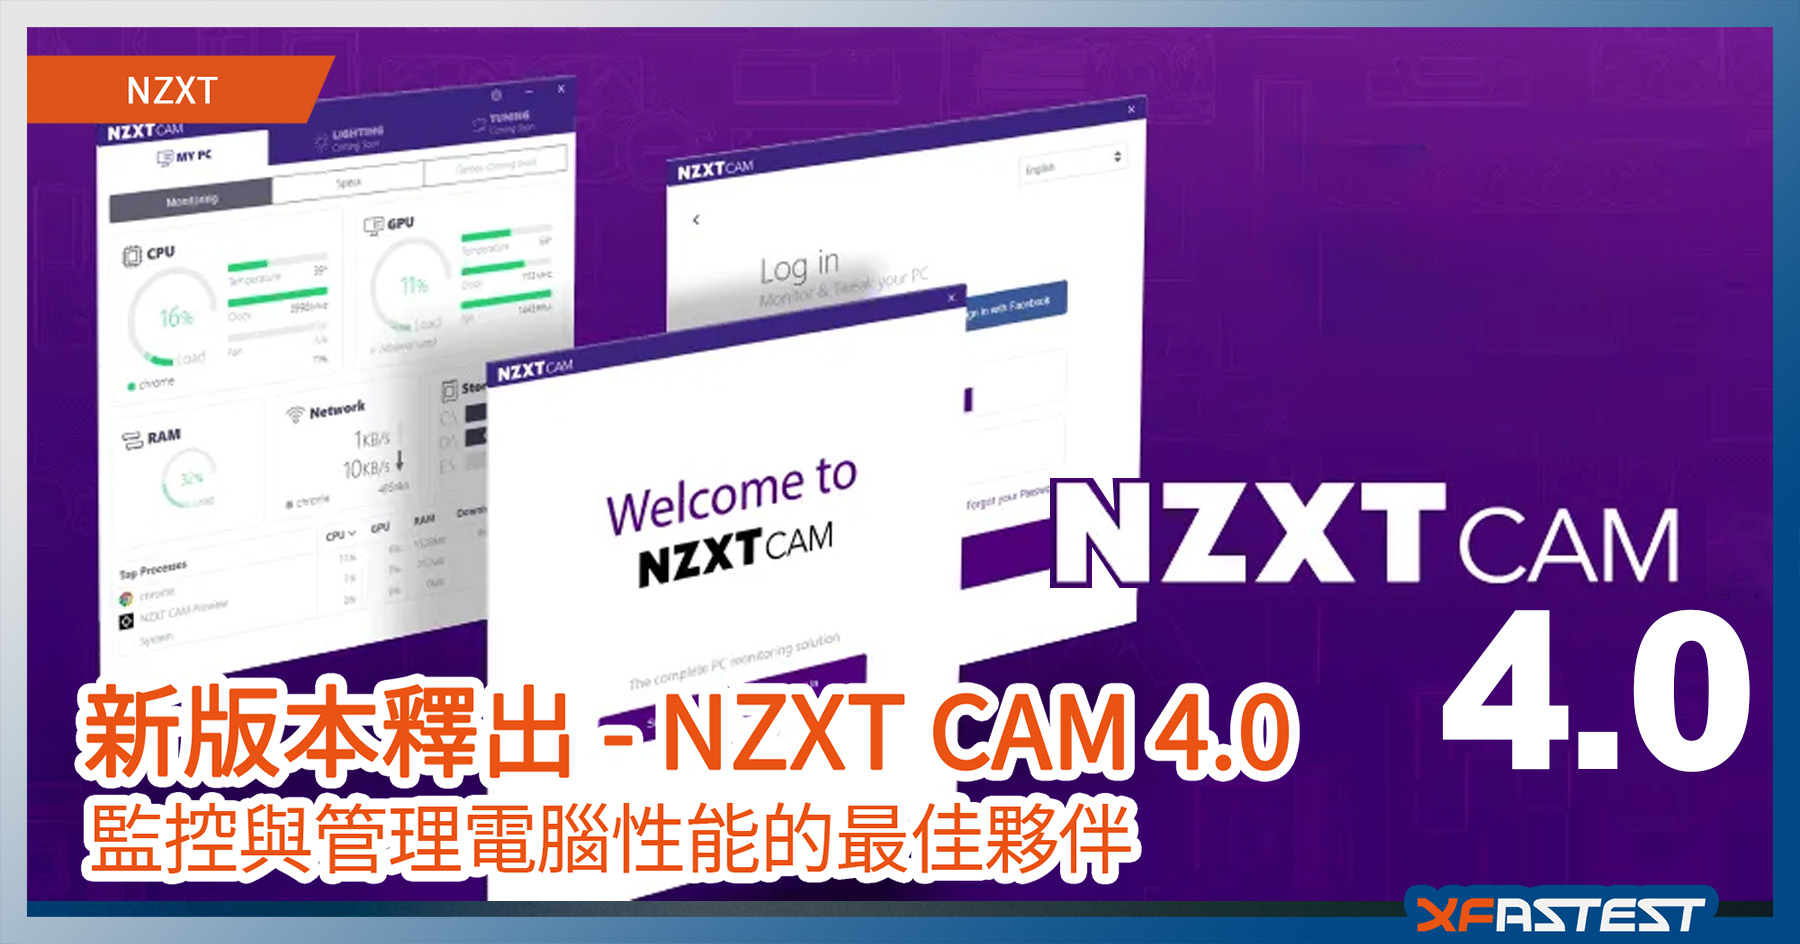 監管電腦性能 Nzxt Cam 升級到4 0 版本 Xfastest Hong Kong